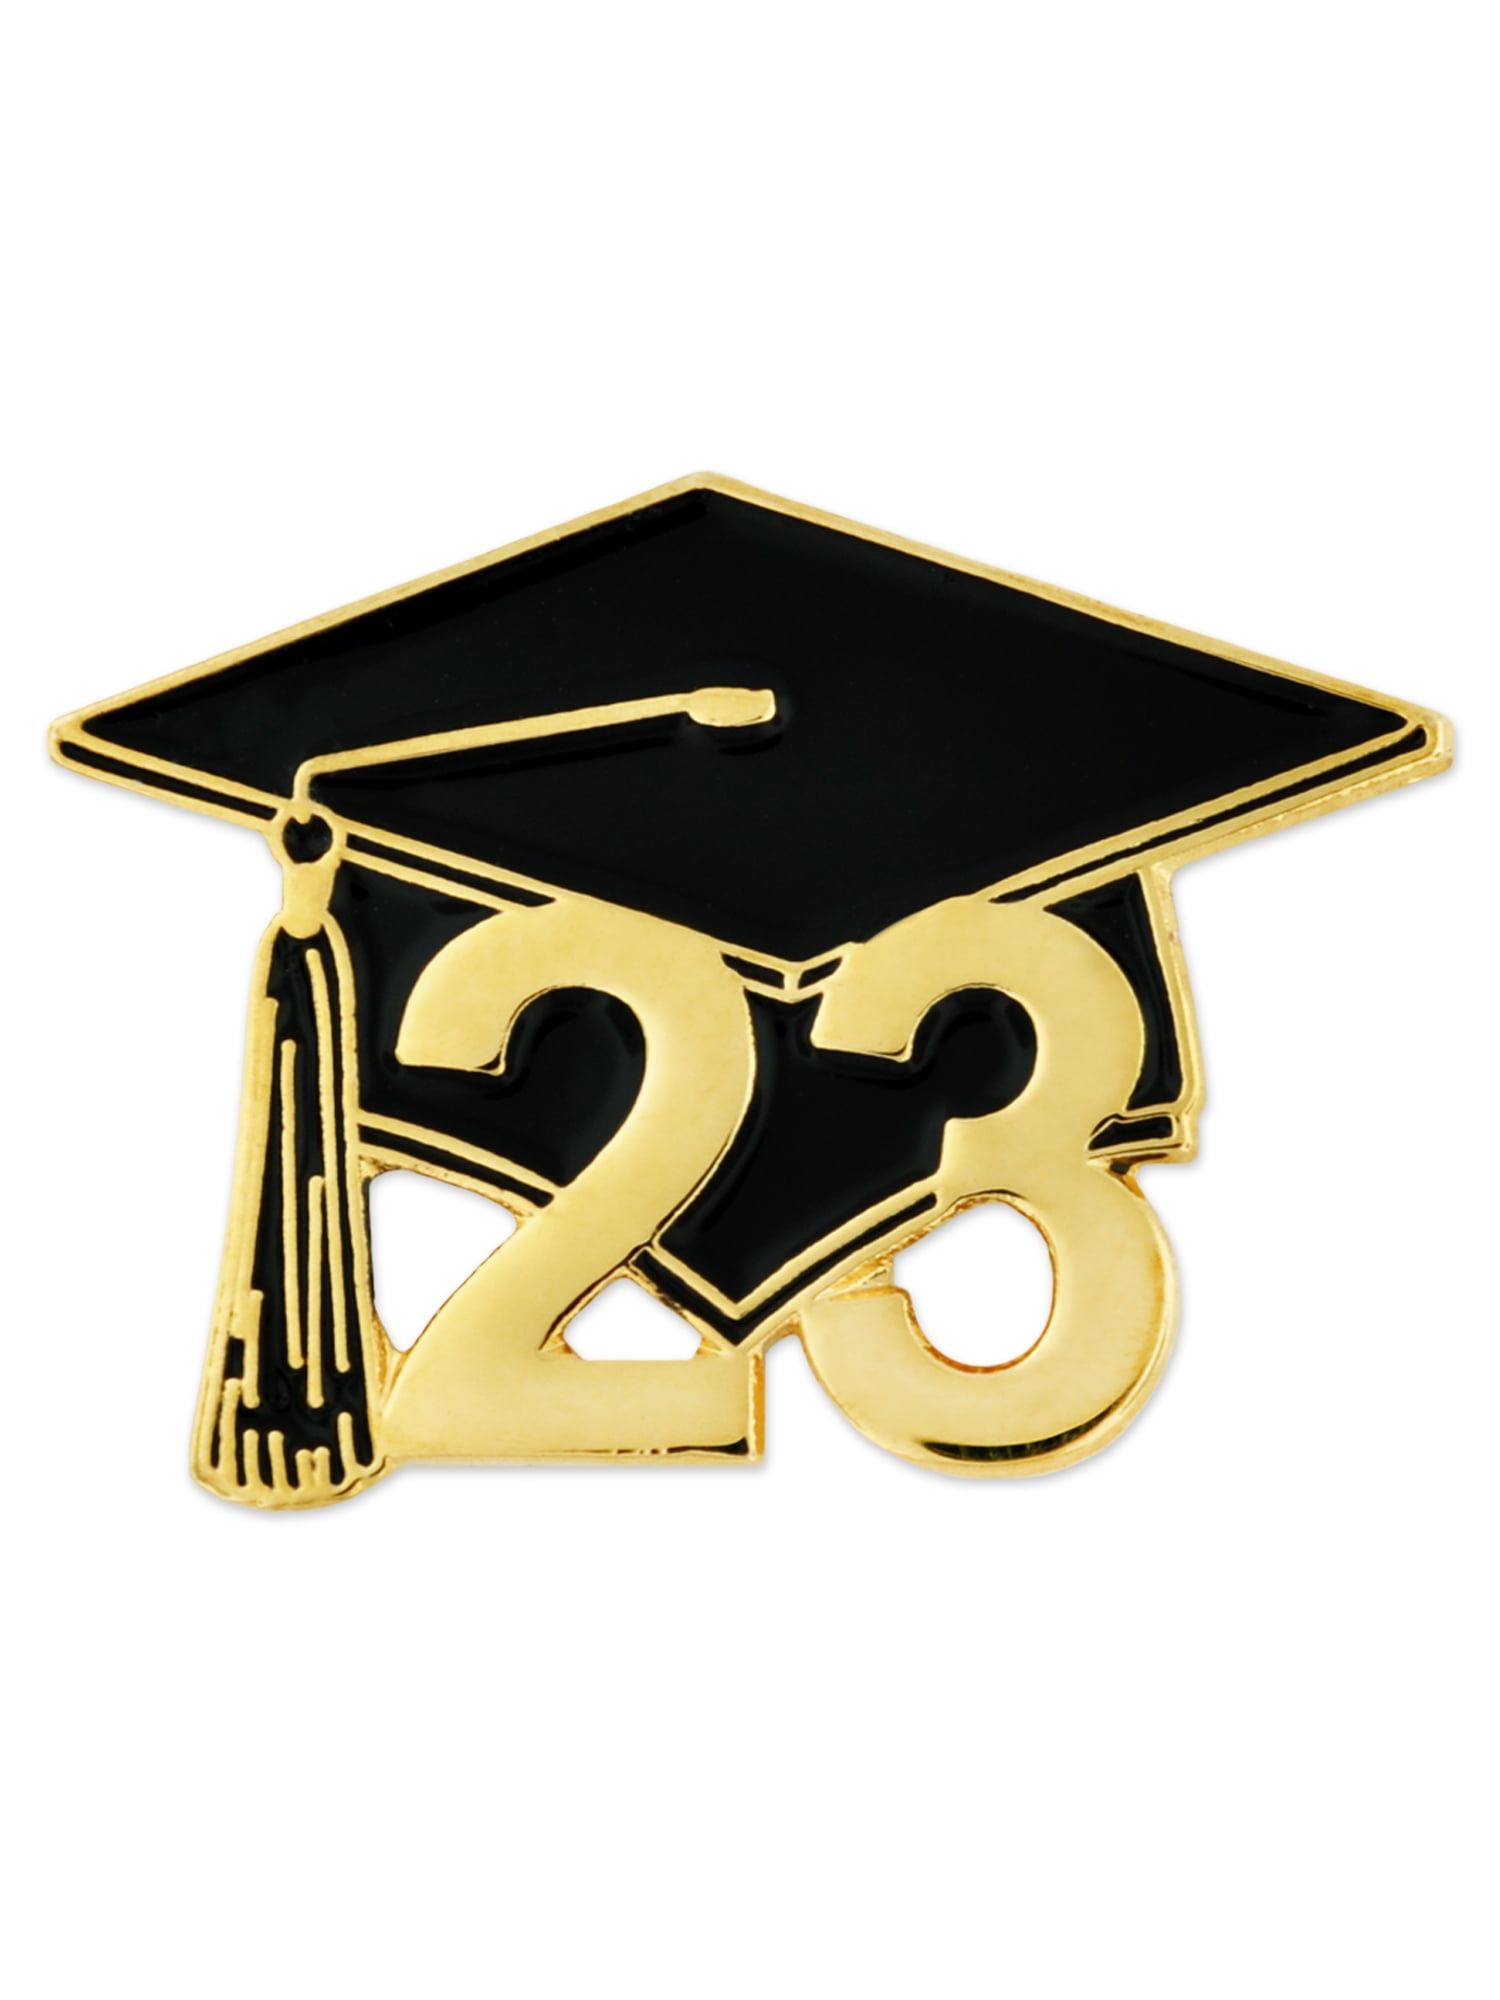 PinMart's Class of 2023 Graduation Graduate Cap School Lapel Pin Gift